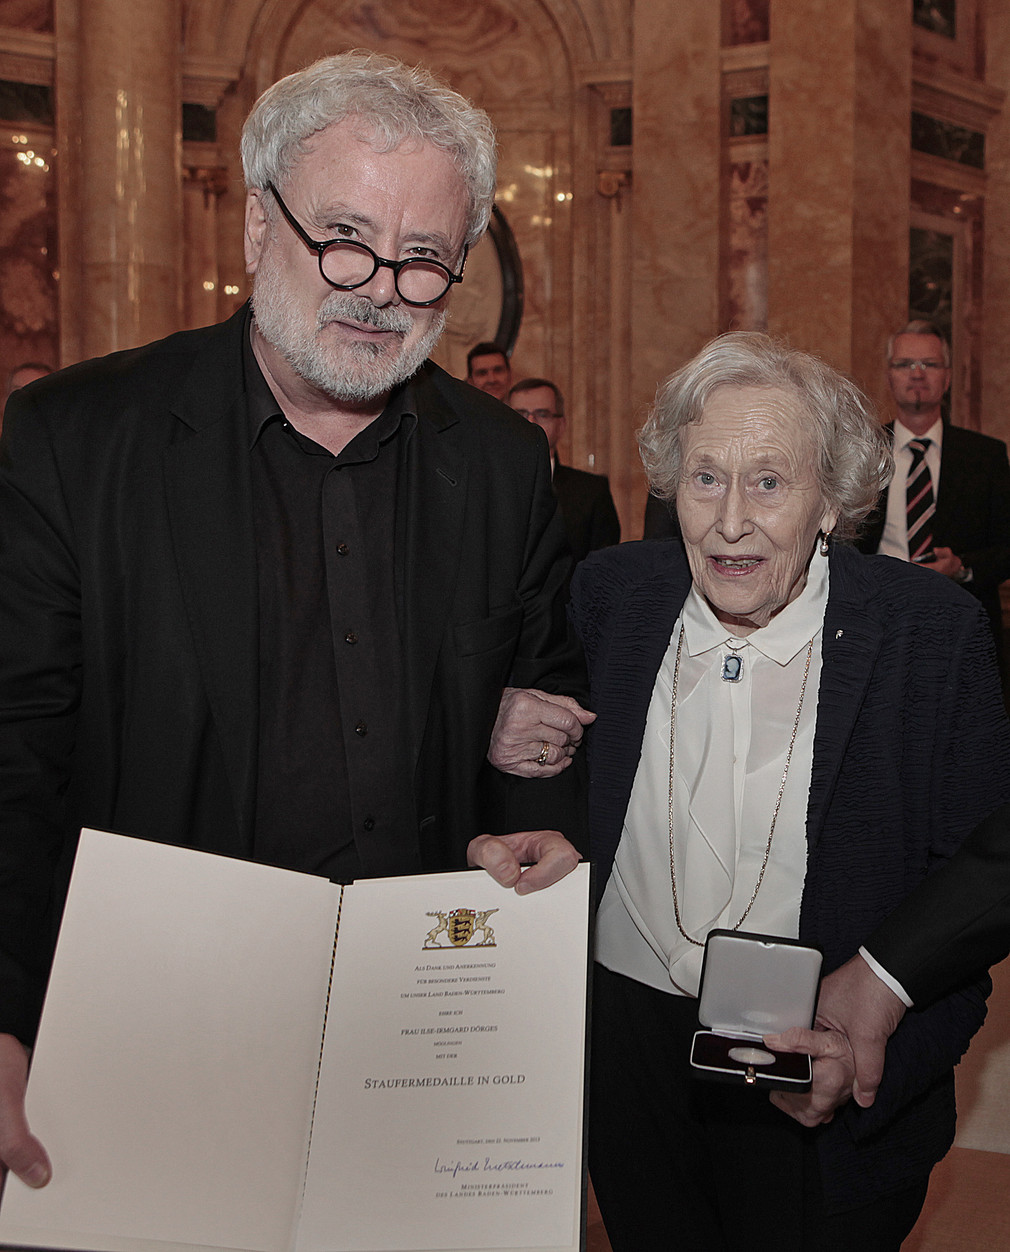 Staatssekretär Klaus-Peter Murawski (l.) und Ilse-Irmgard Dörges (r.) anlässlich der Überreichung der Staufermedaille in Gold am 22. November 2013 im Neuen Schloss in Stuttgart